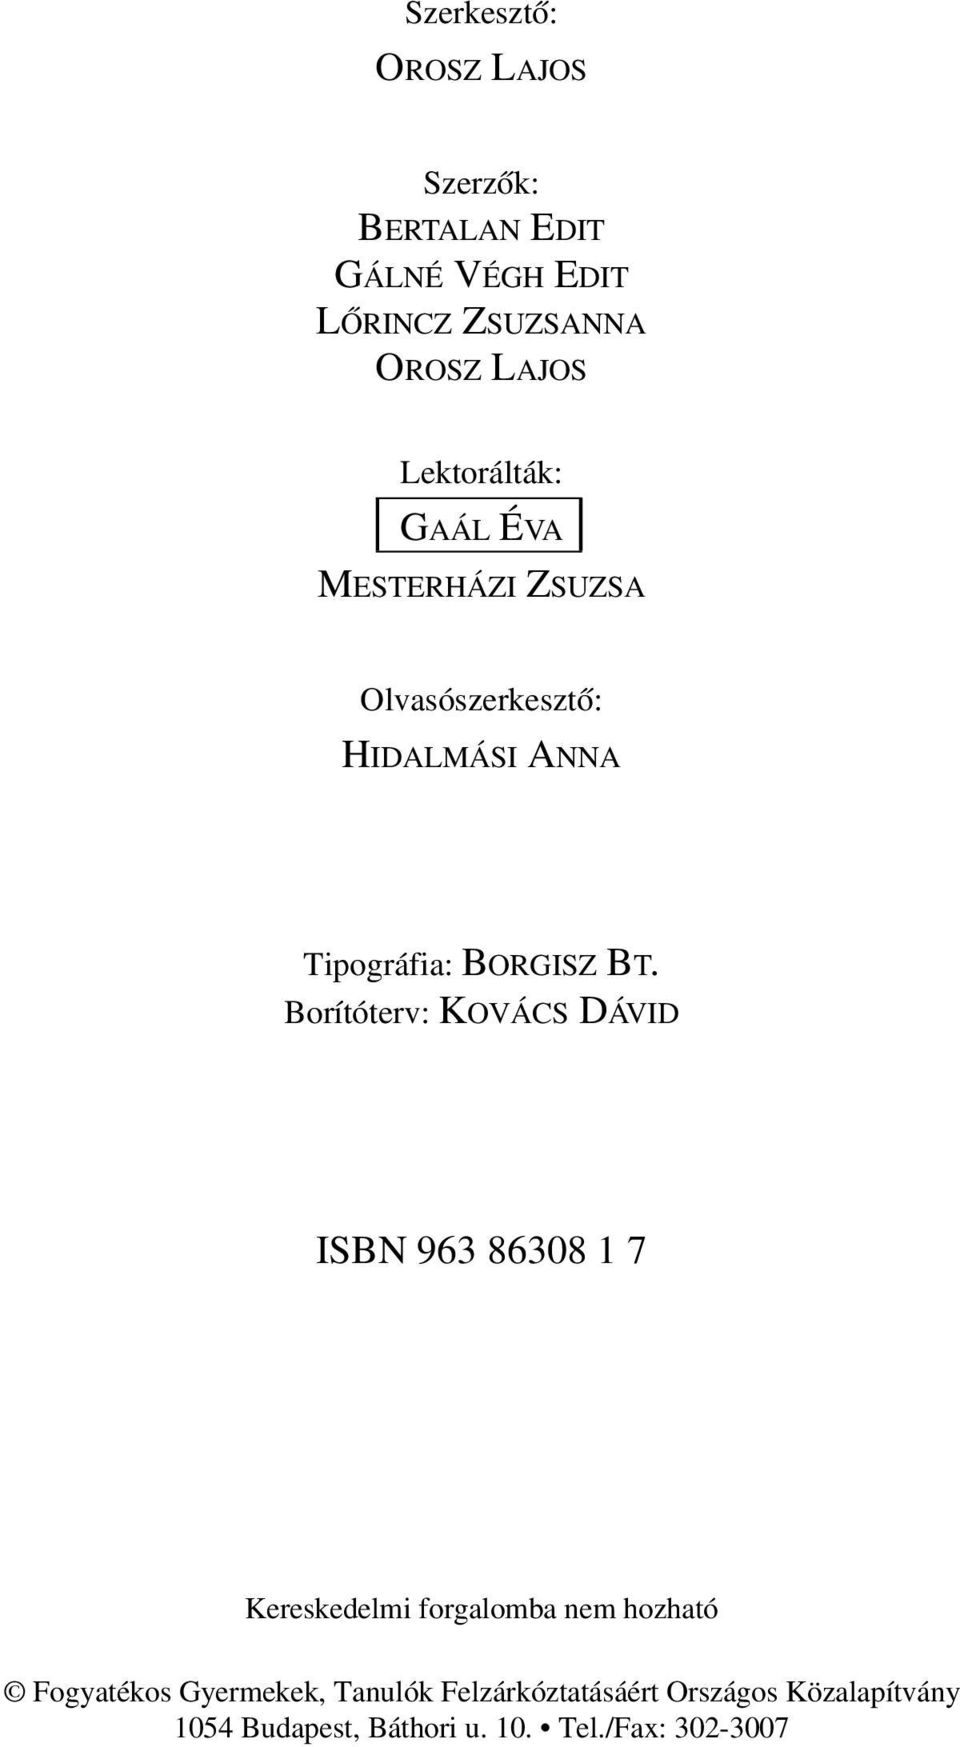 Borítóterv: KOVÁCS DÁVID ISBN 963 86308 1 7 Kereskedelmi forgalomba nem hozható Fogyatékos